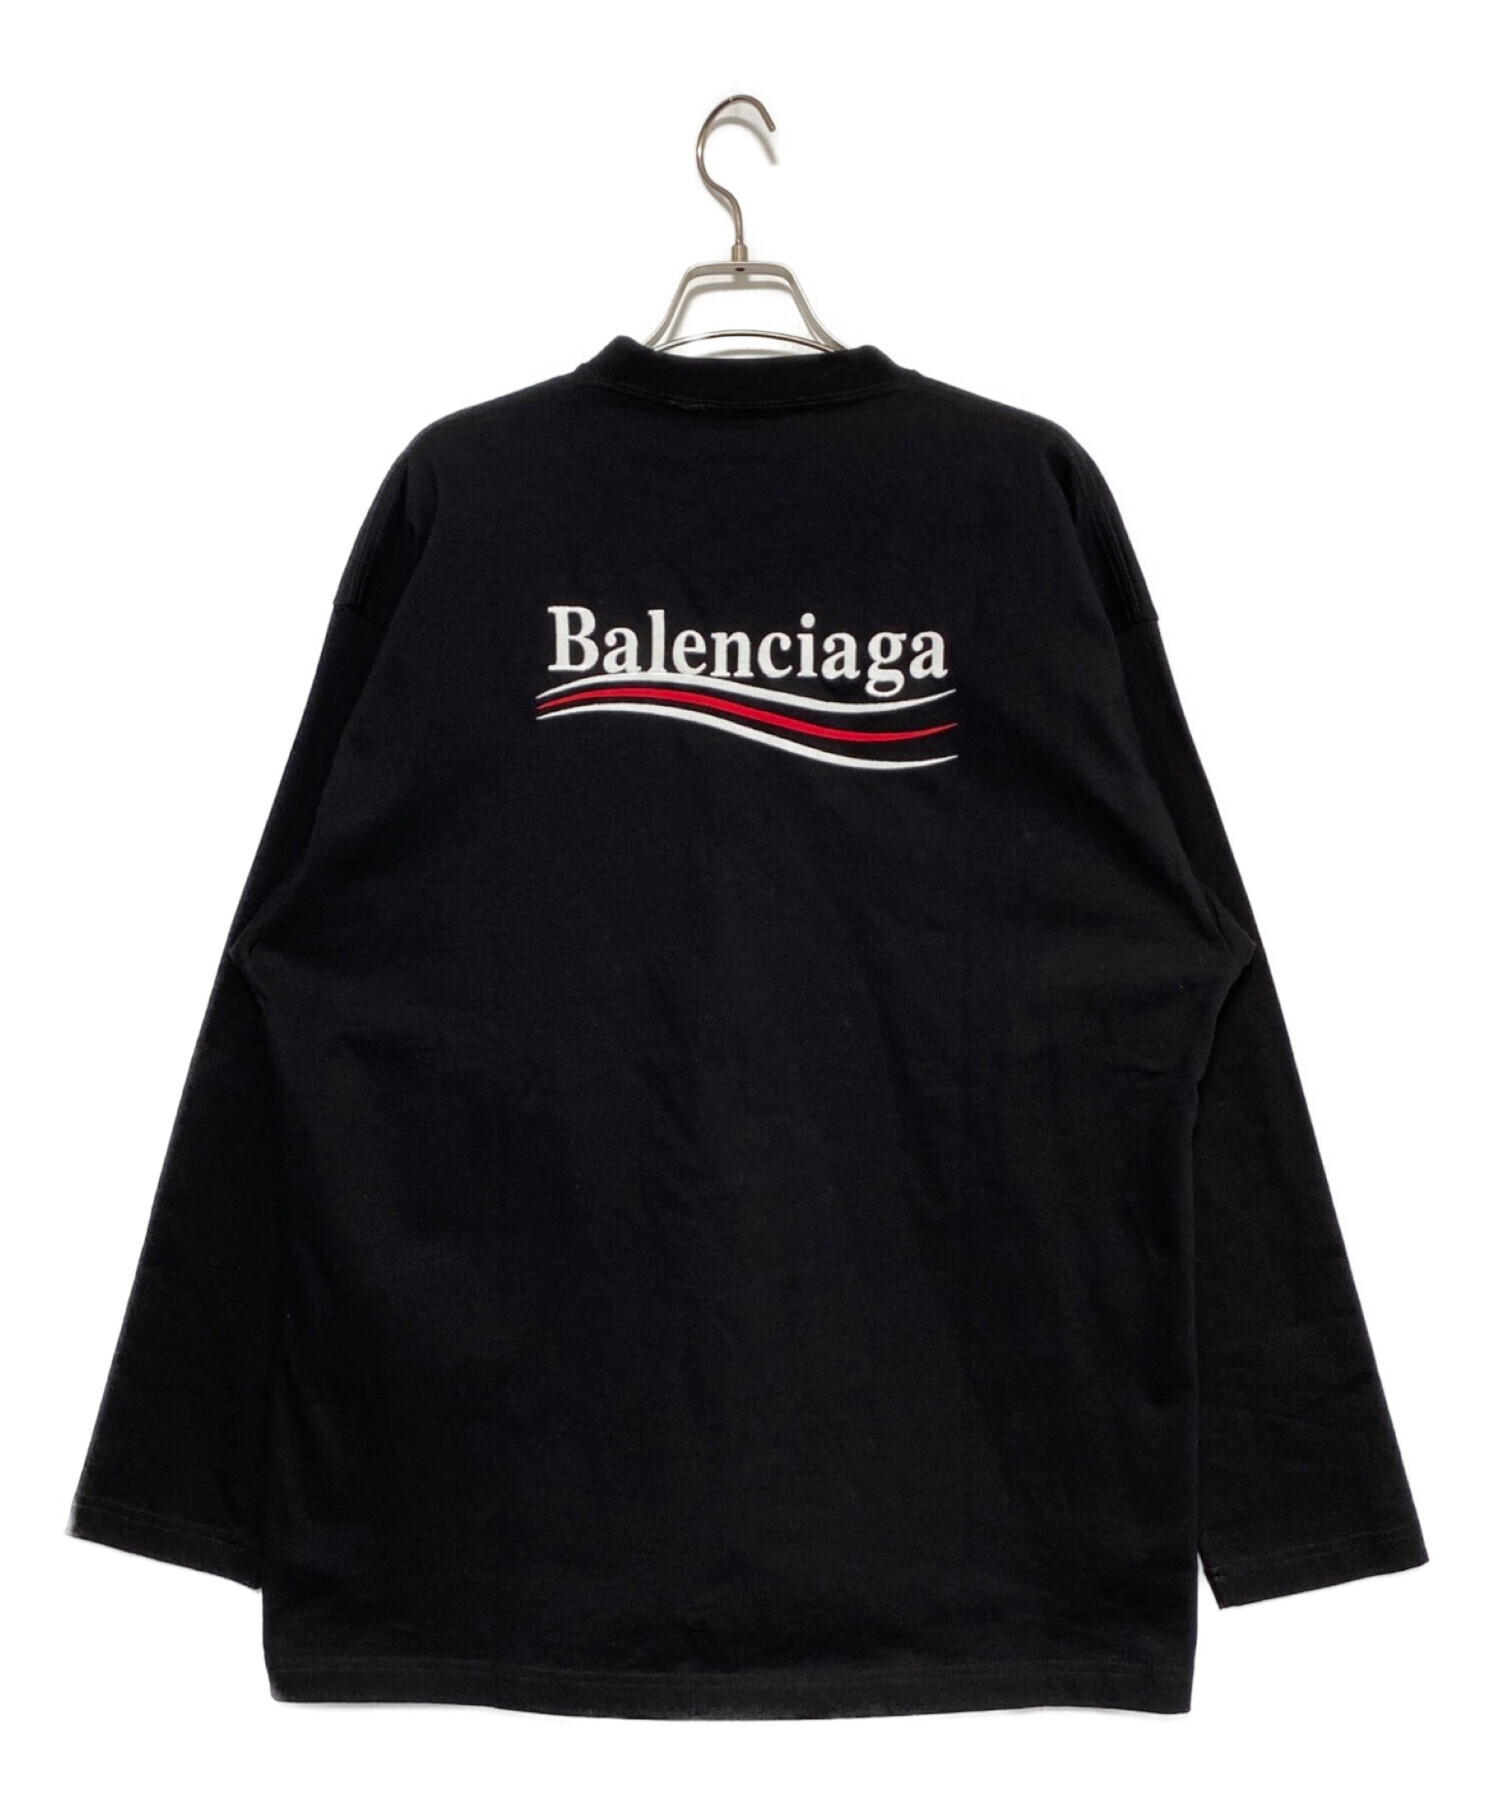 BALENCIAGA バレンシアガ 長袖 Tシャツ サイズ L - Tシャツ/カットソー 